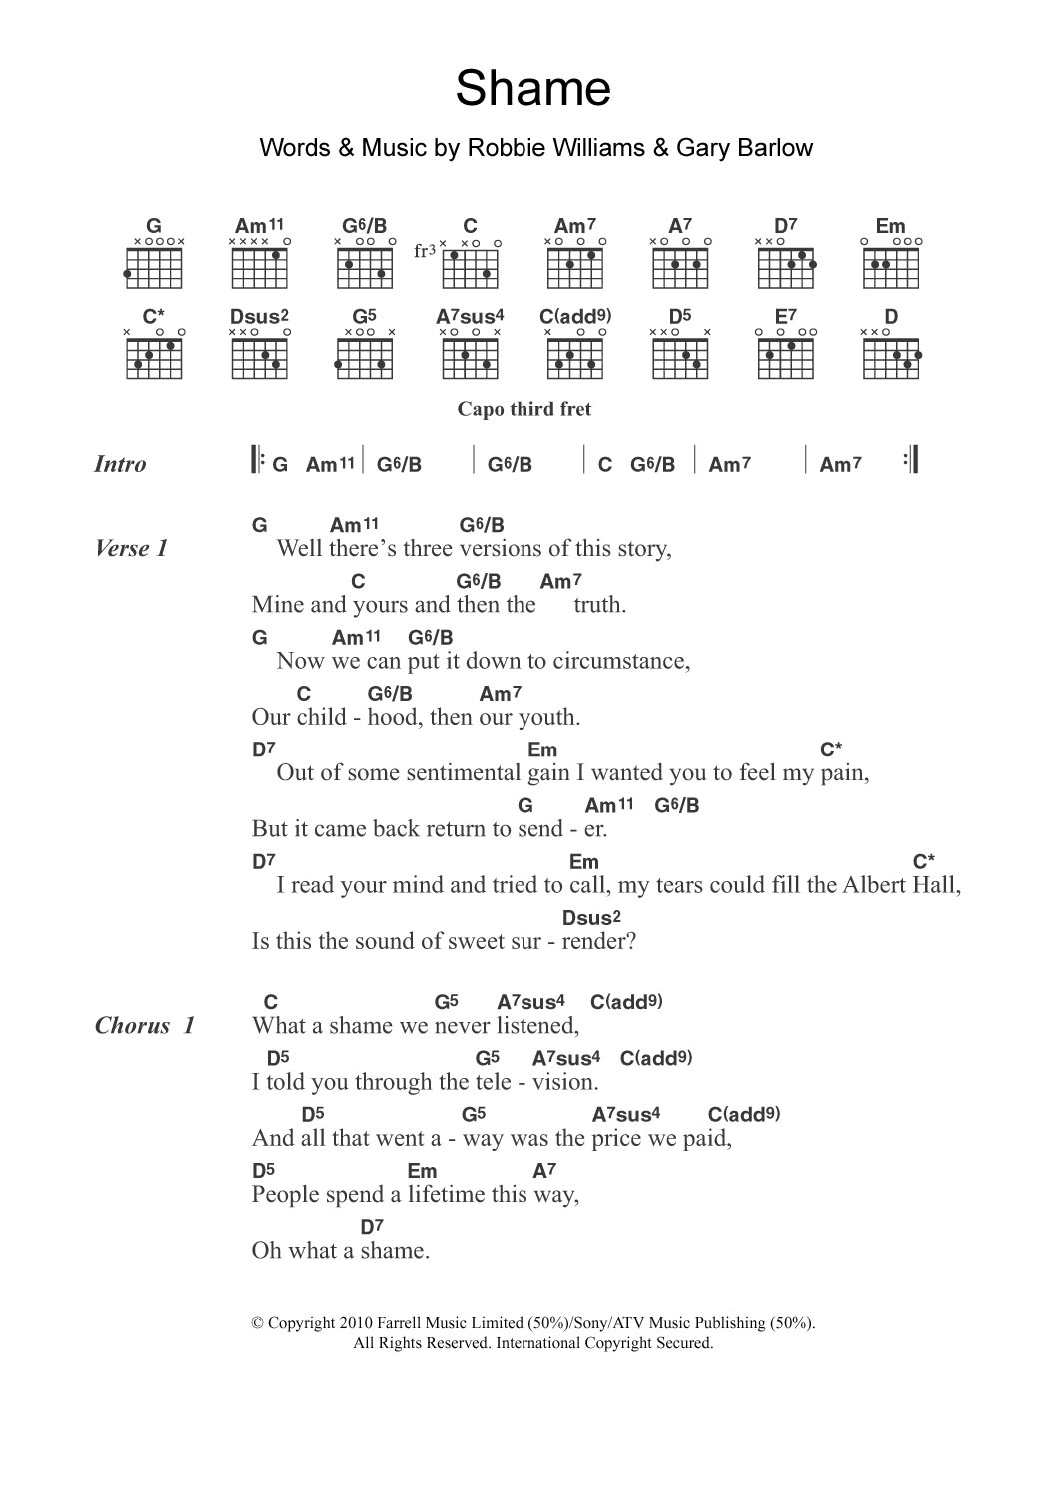 Gary Barlow Shame Sheet Music Notes & Chords for Guitar Chords/Lyrics - Download or Print PDF